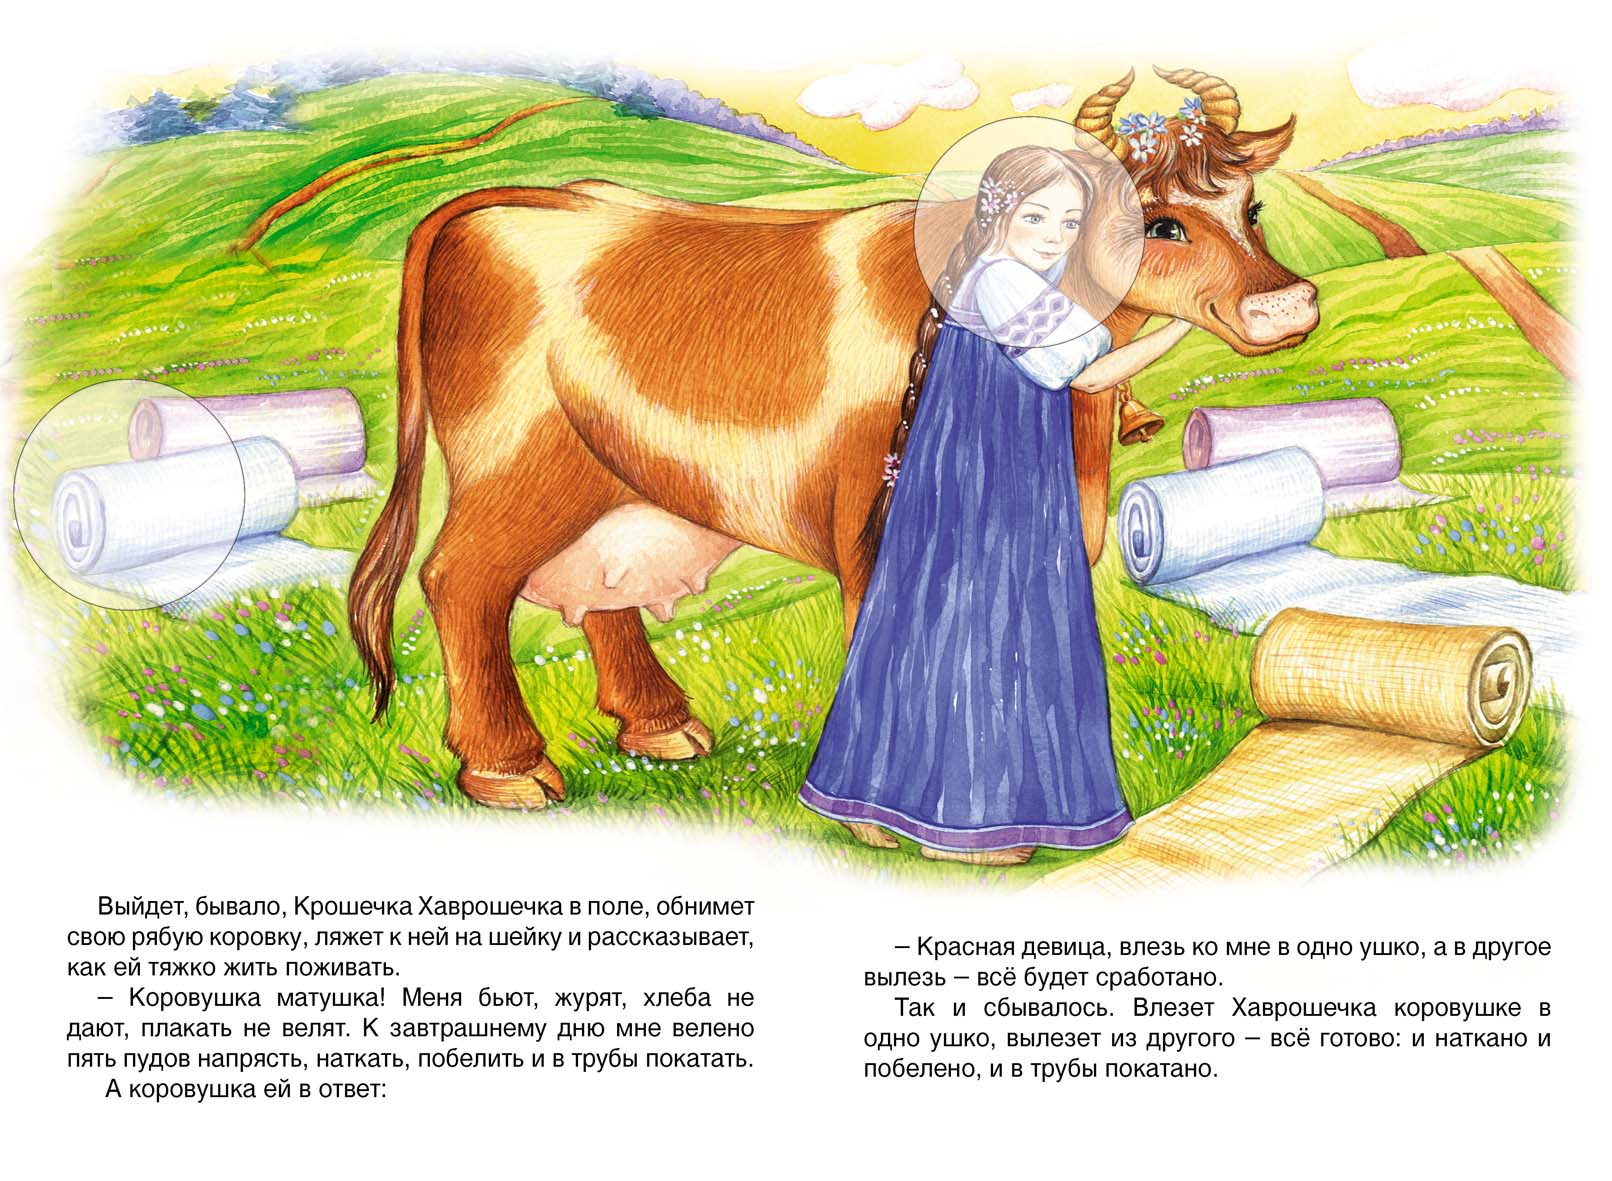 Иллюстрация к сказке крошечка Хаврошечка